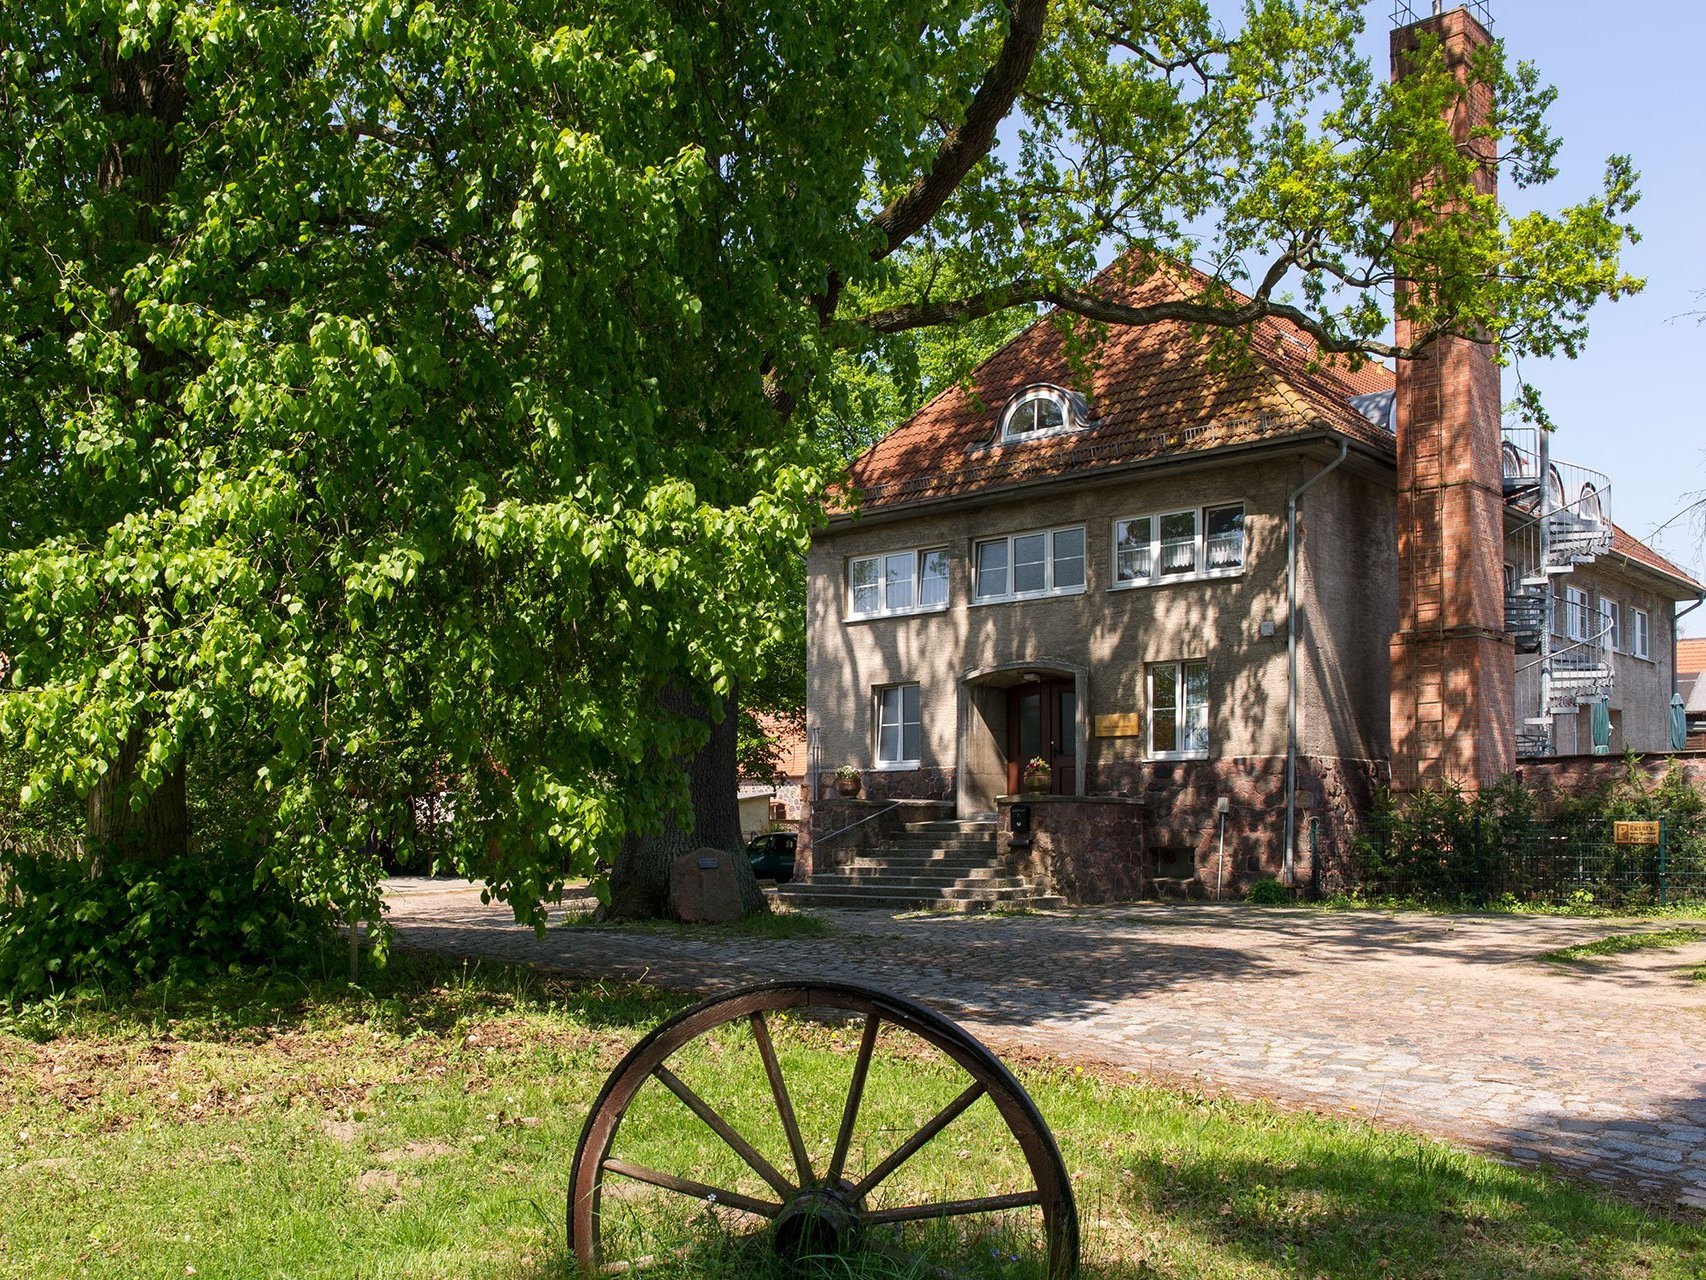 Aussenansicht auf Haus Klein Linde - im Vordergrund steht ein altes Kutsch-Rad auf einer Wiese